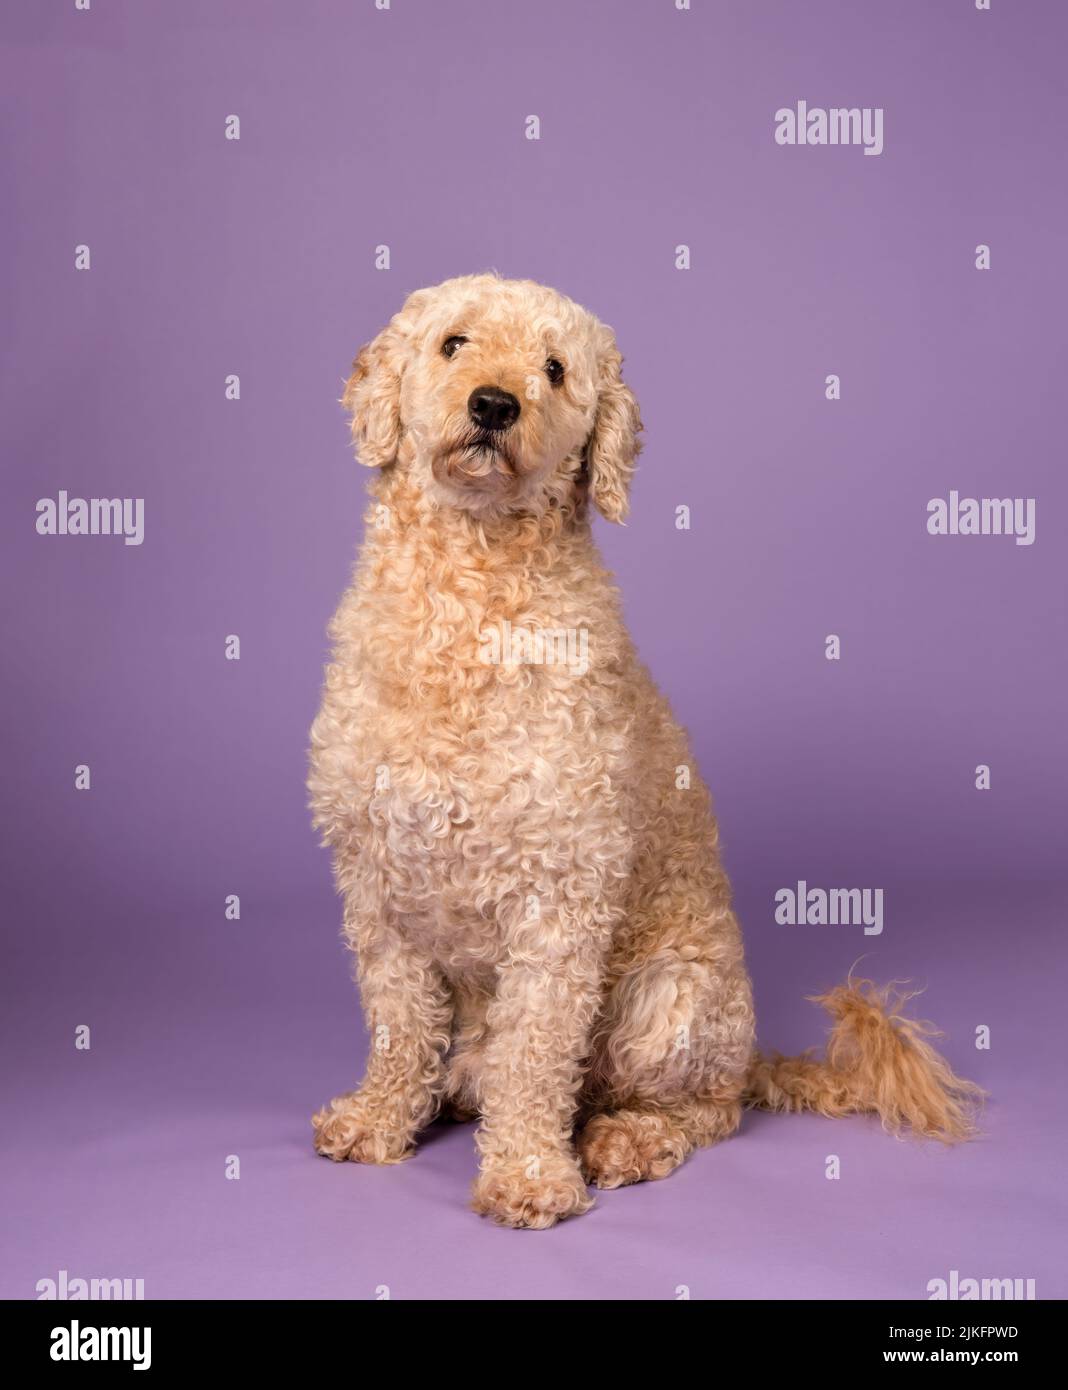 Un hermoso perro Labradoodle de color beige, fotografiado en un estudio y mirando hacia la cámara. Fotografiado sobre un fondo púrpura Foto de stock